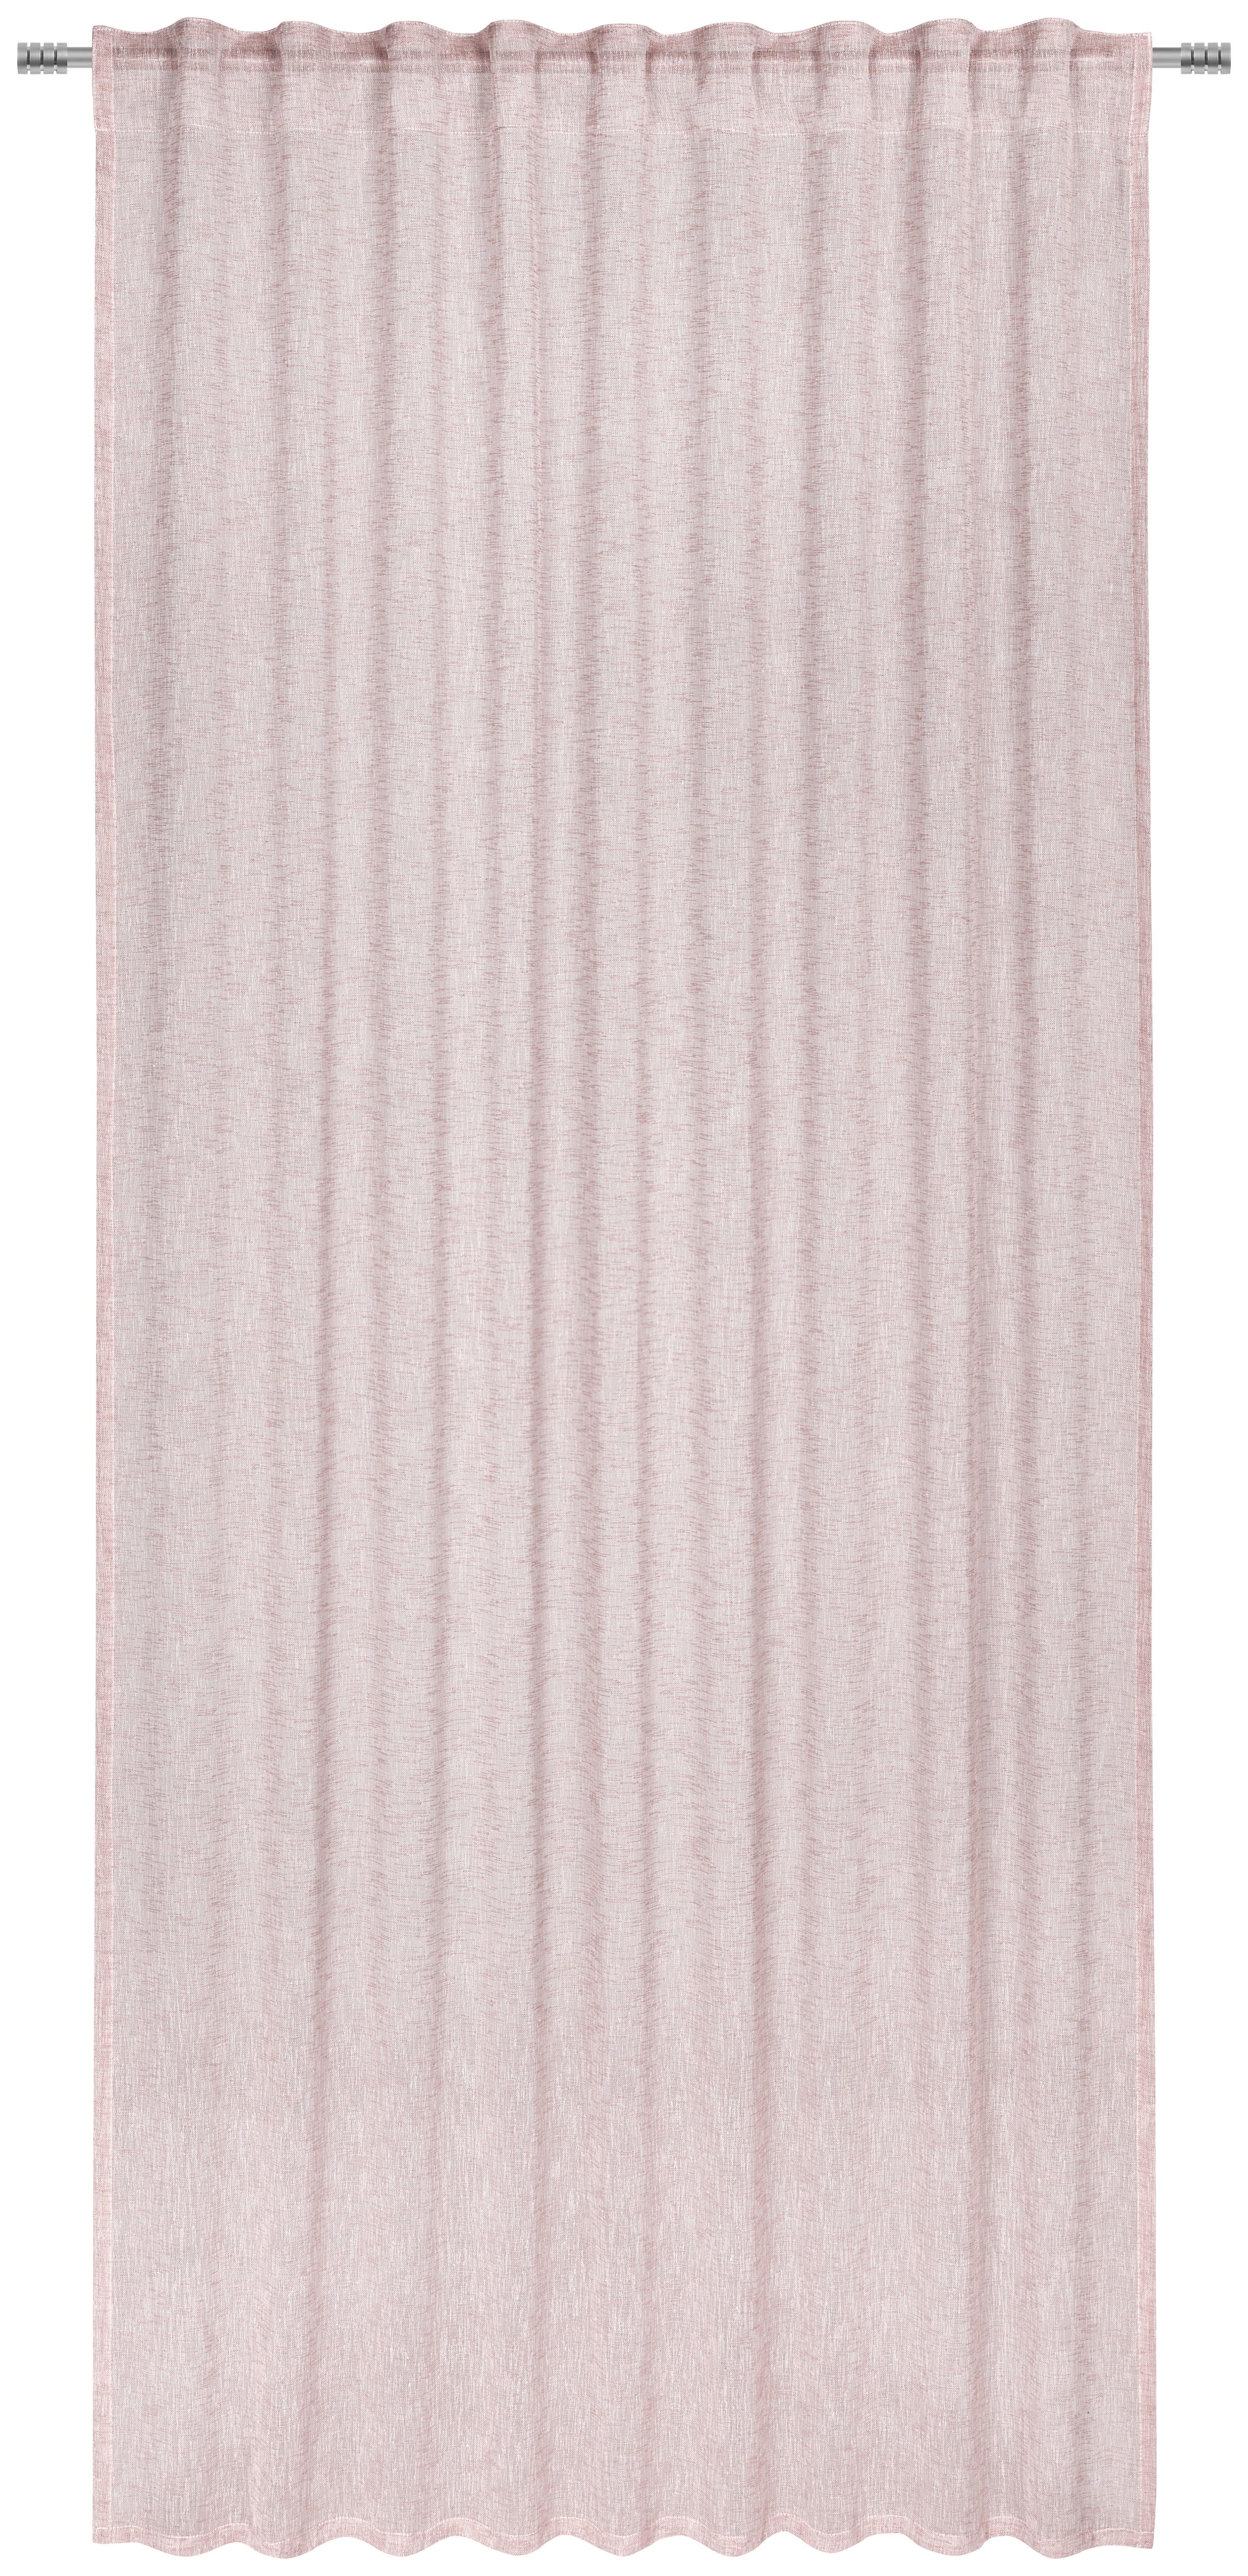 HOTOVÝ ZÁVES, polopriehľadné, 140/245 cm - ružová, Basics, textil (140/245cm) - Esposa